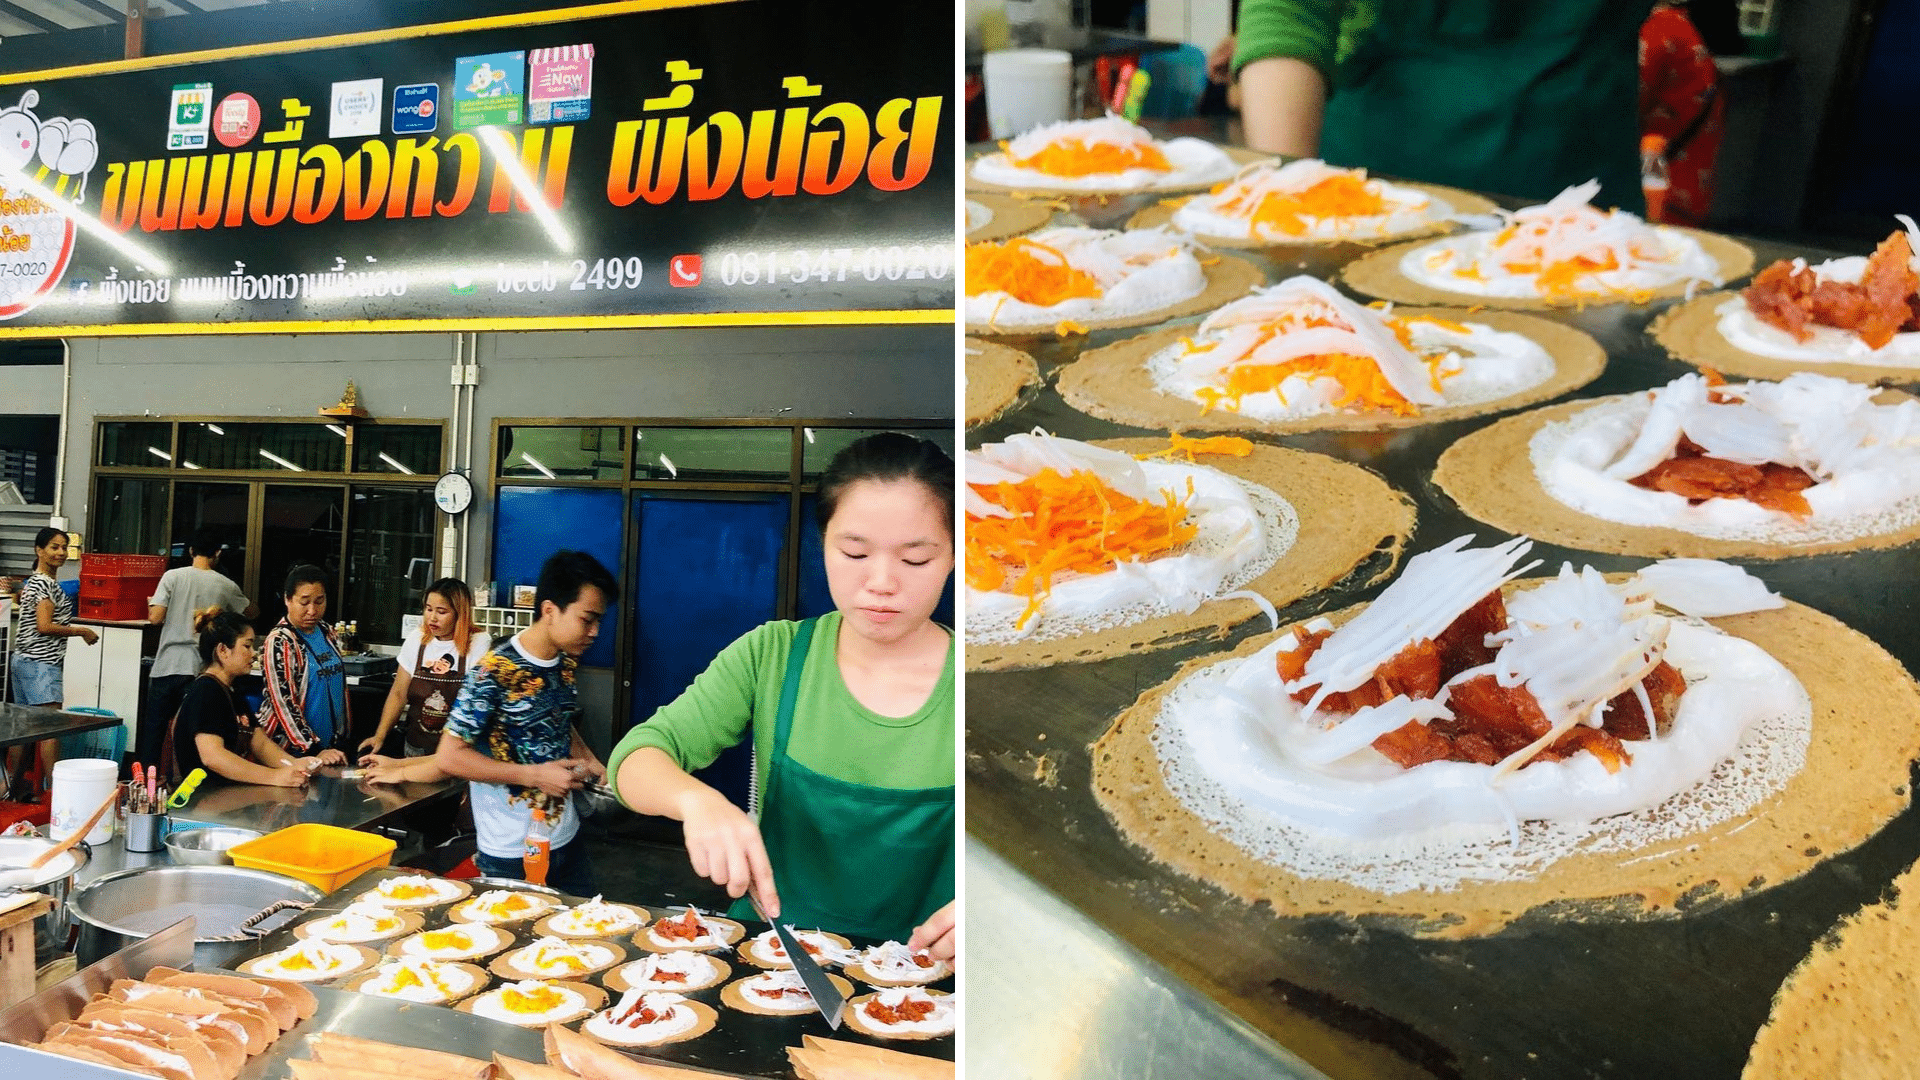 must-try street food in bangkok